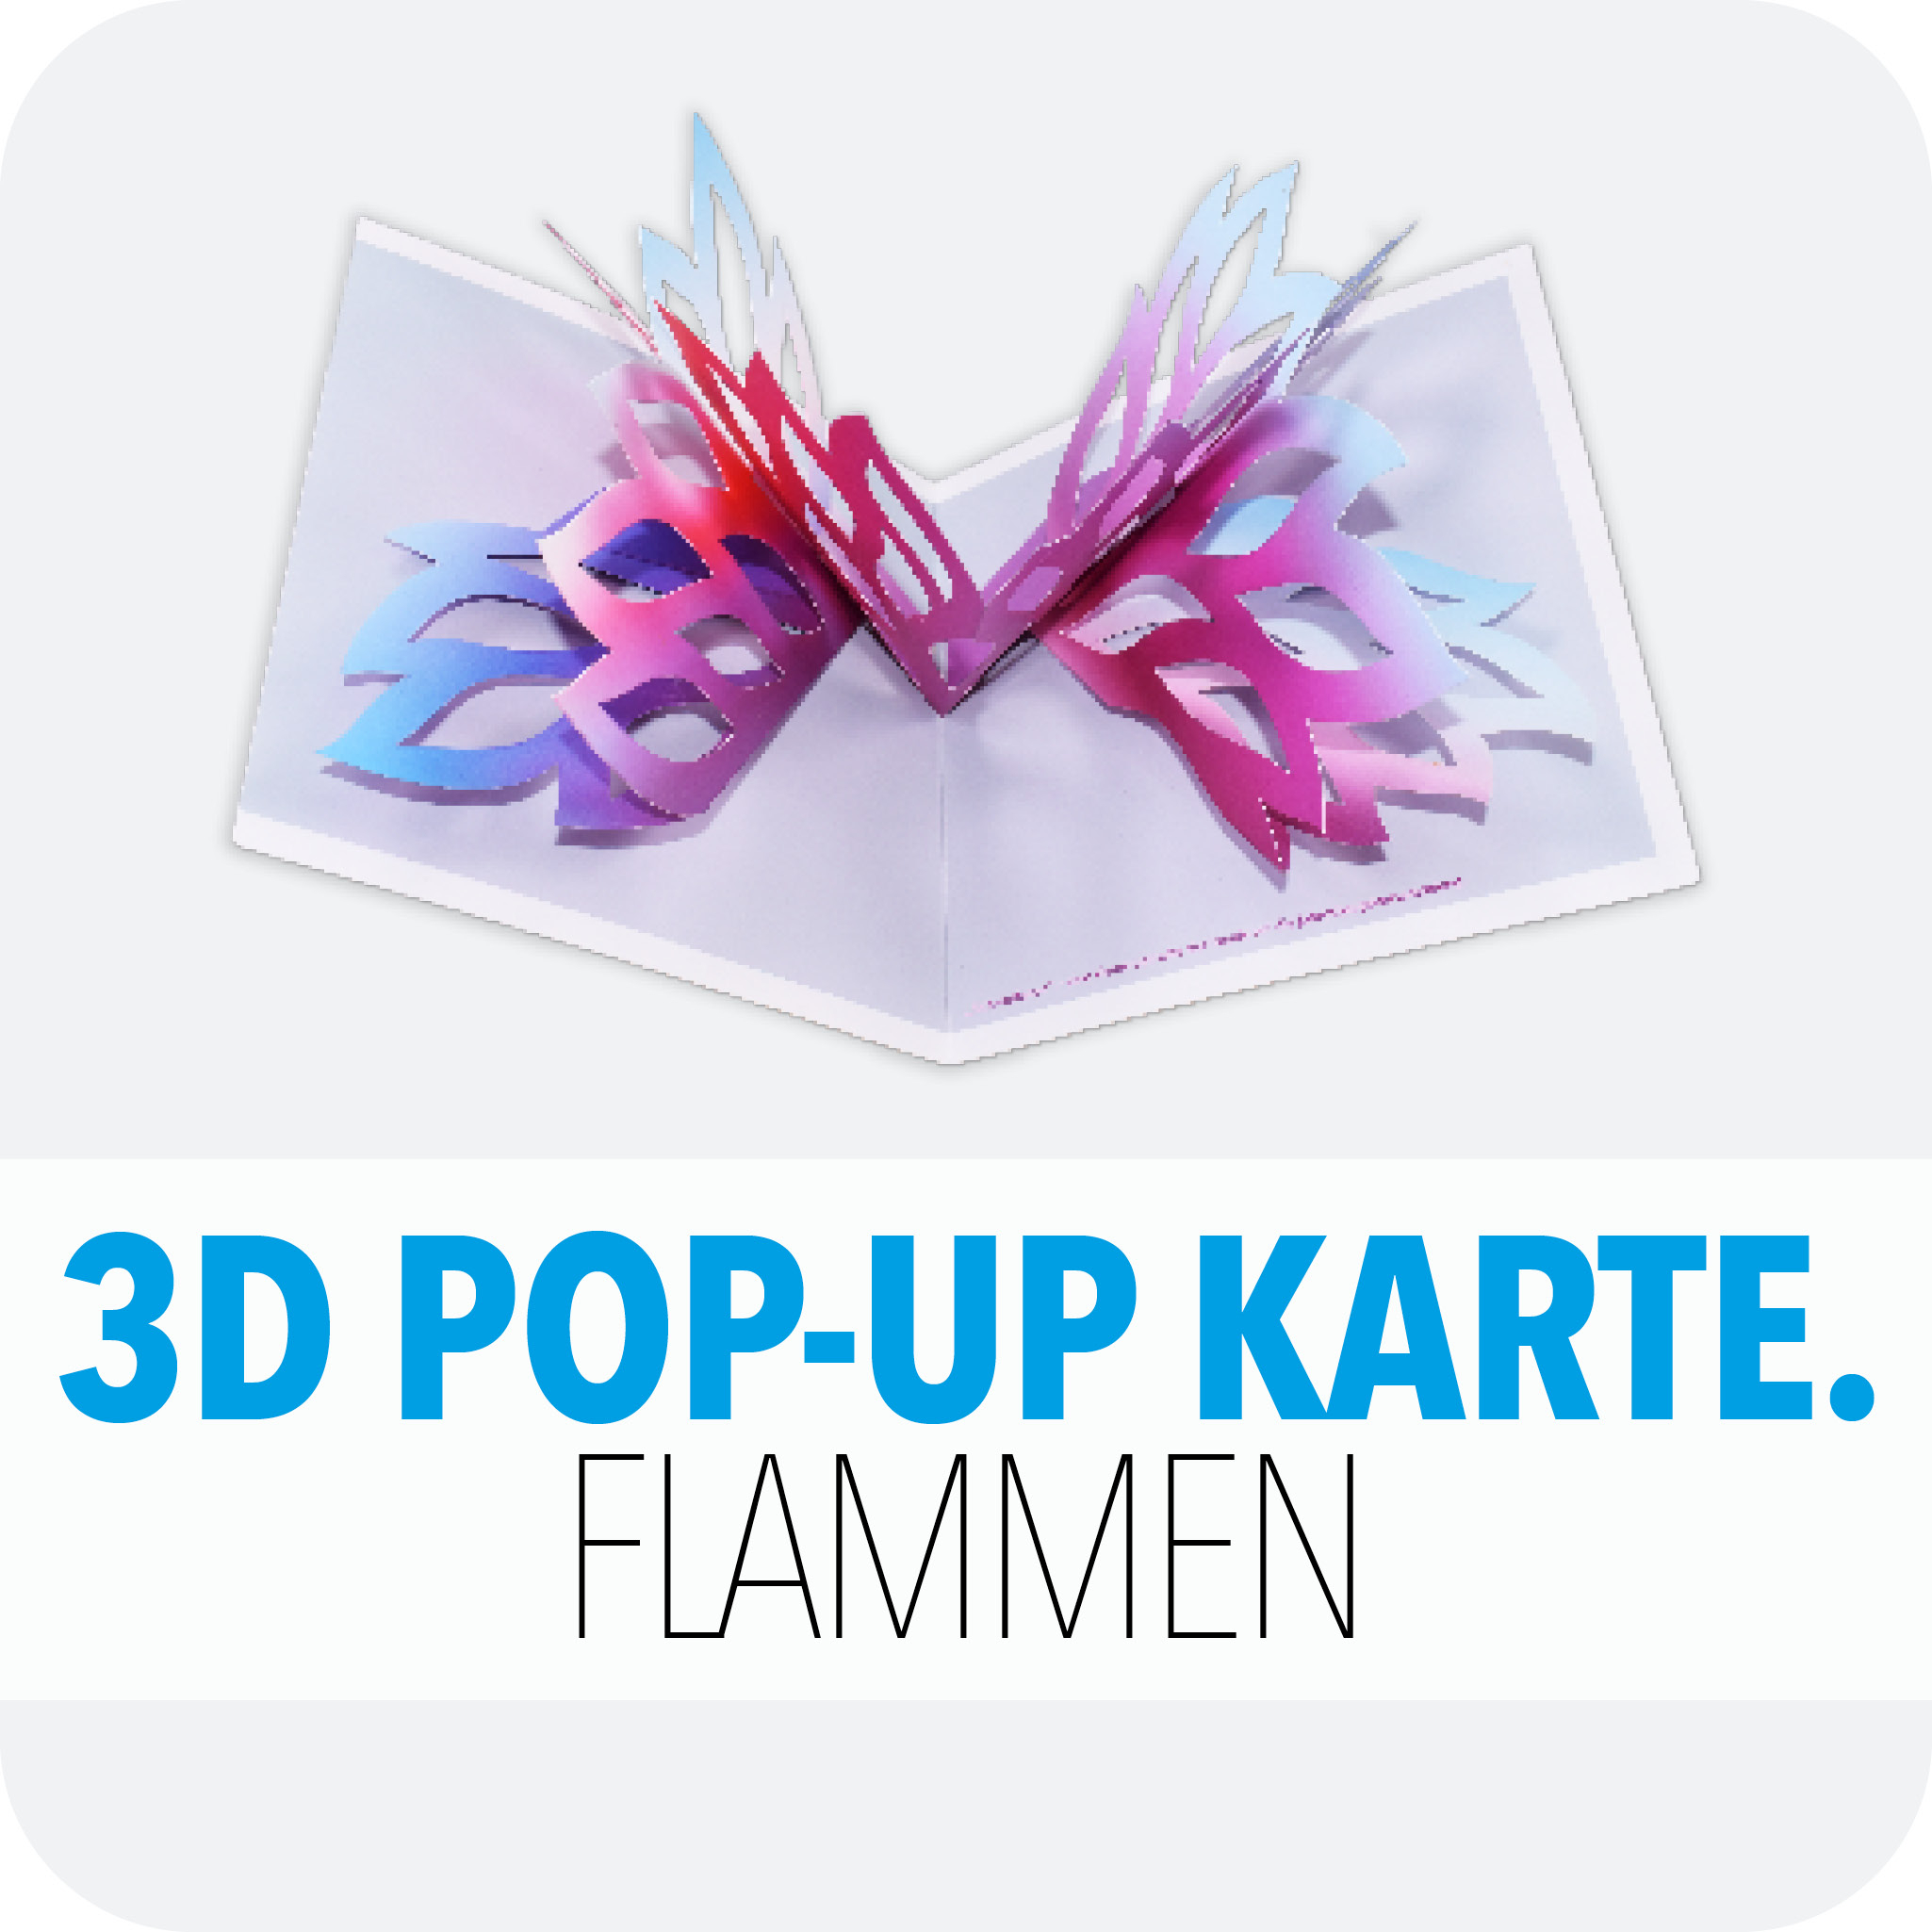 3D Pop-Up Karte Flammen